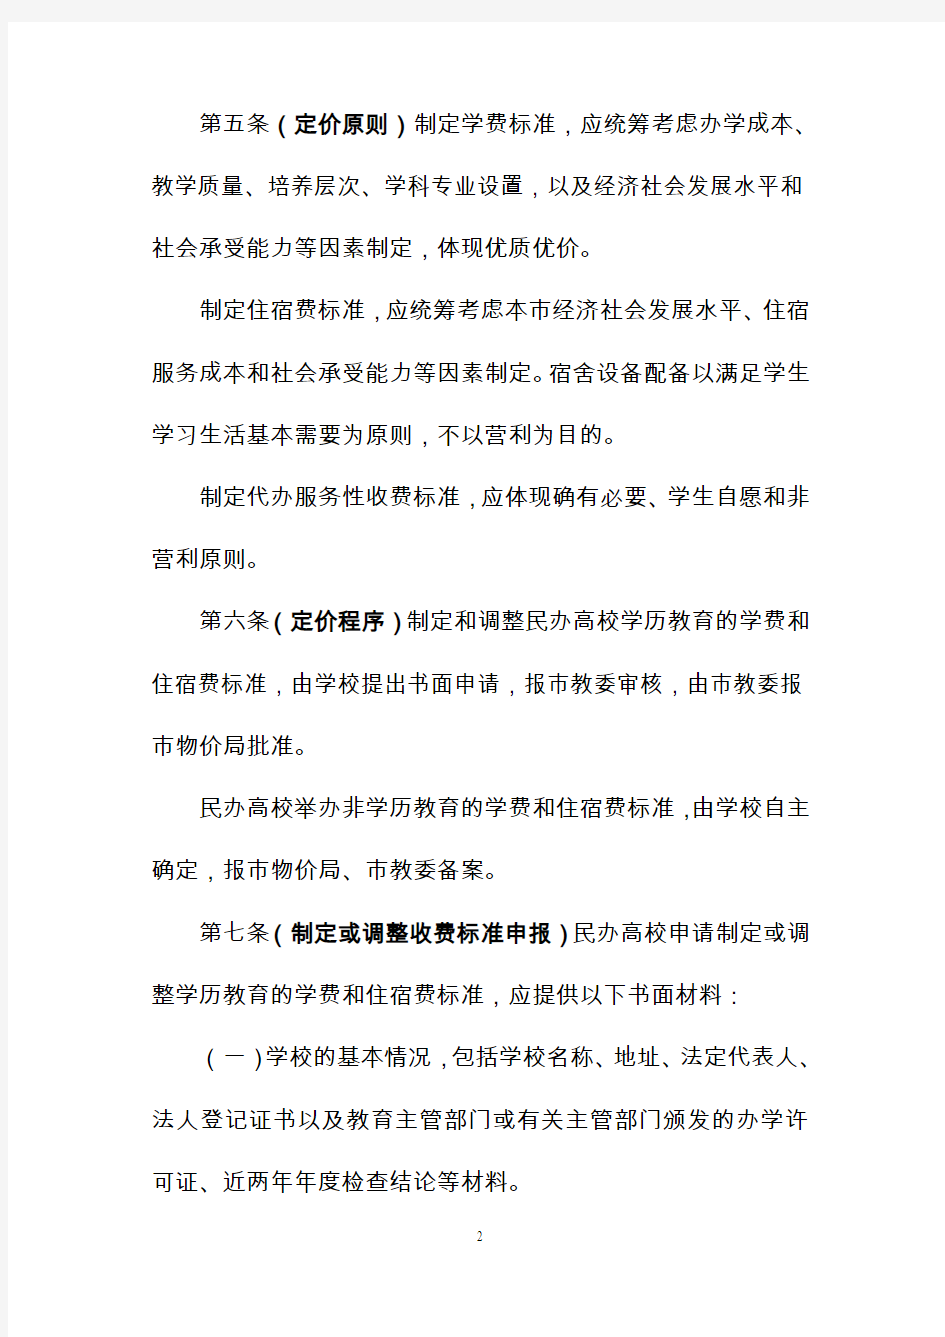 上海市民办学校收费暂行管理办法